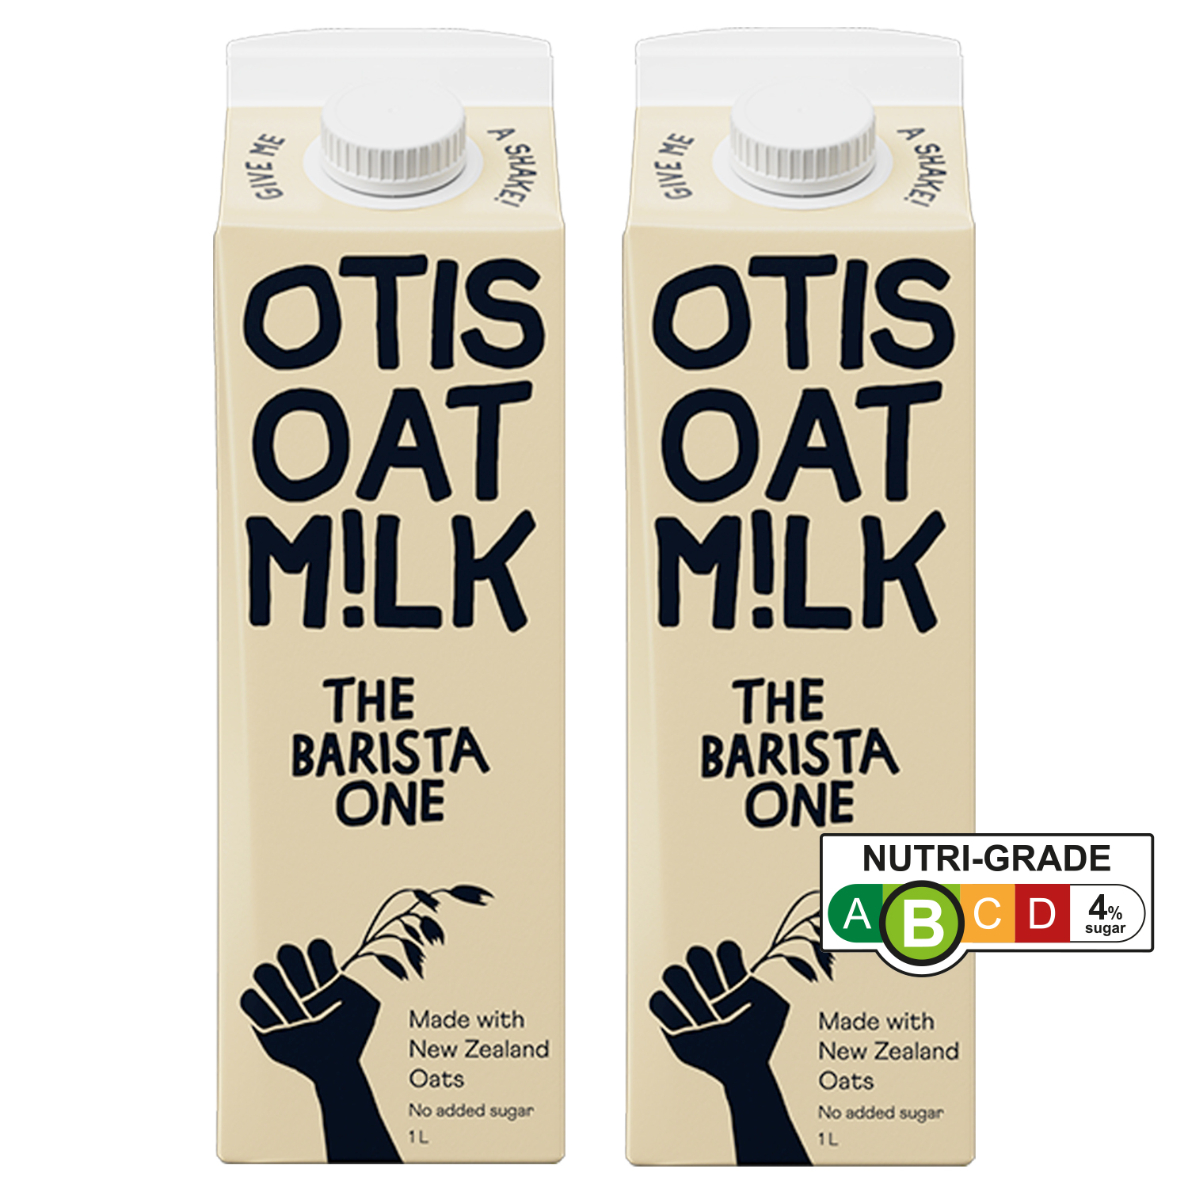 Otis Oat Milk Range